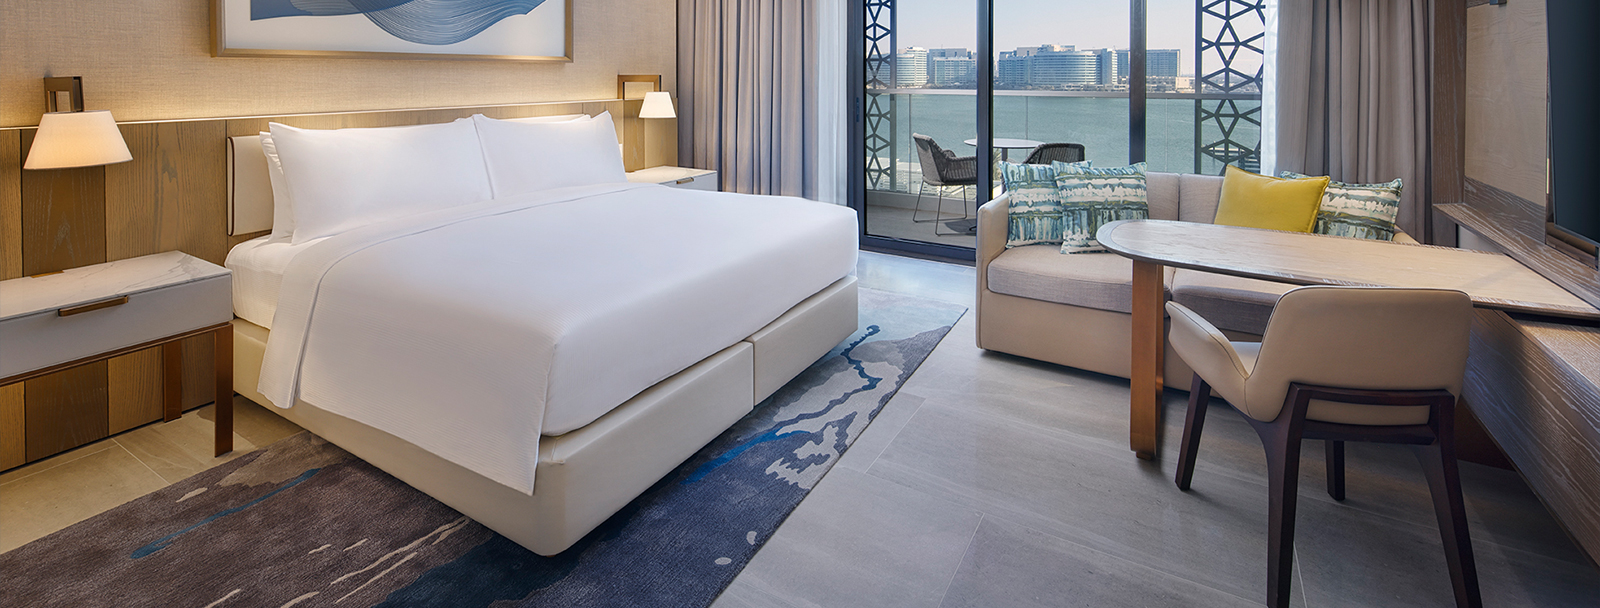 Best Hotel in Abu Dhabi for Staycation | Hilton Abu Dhabi Yas Island